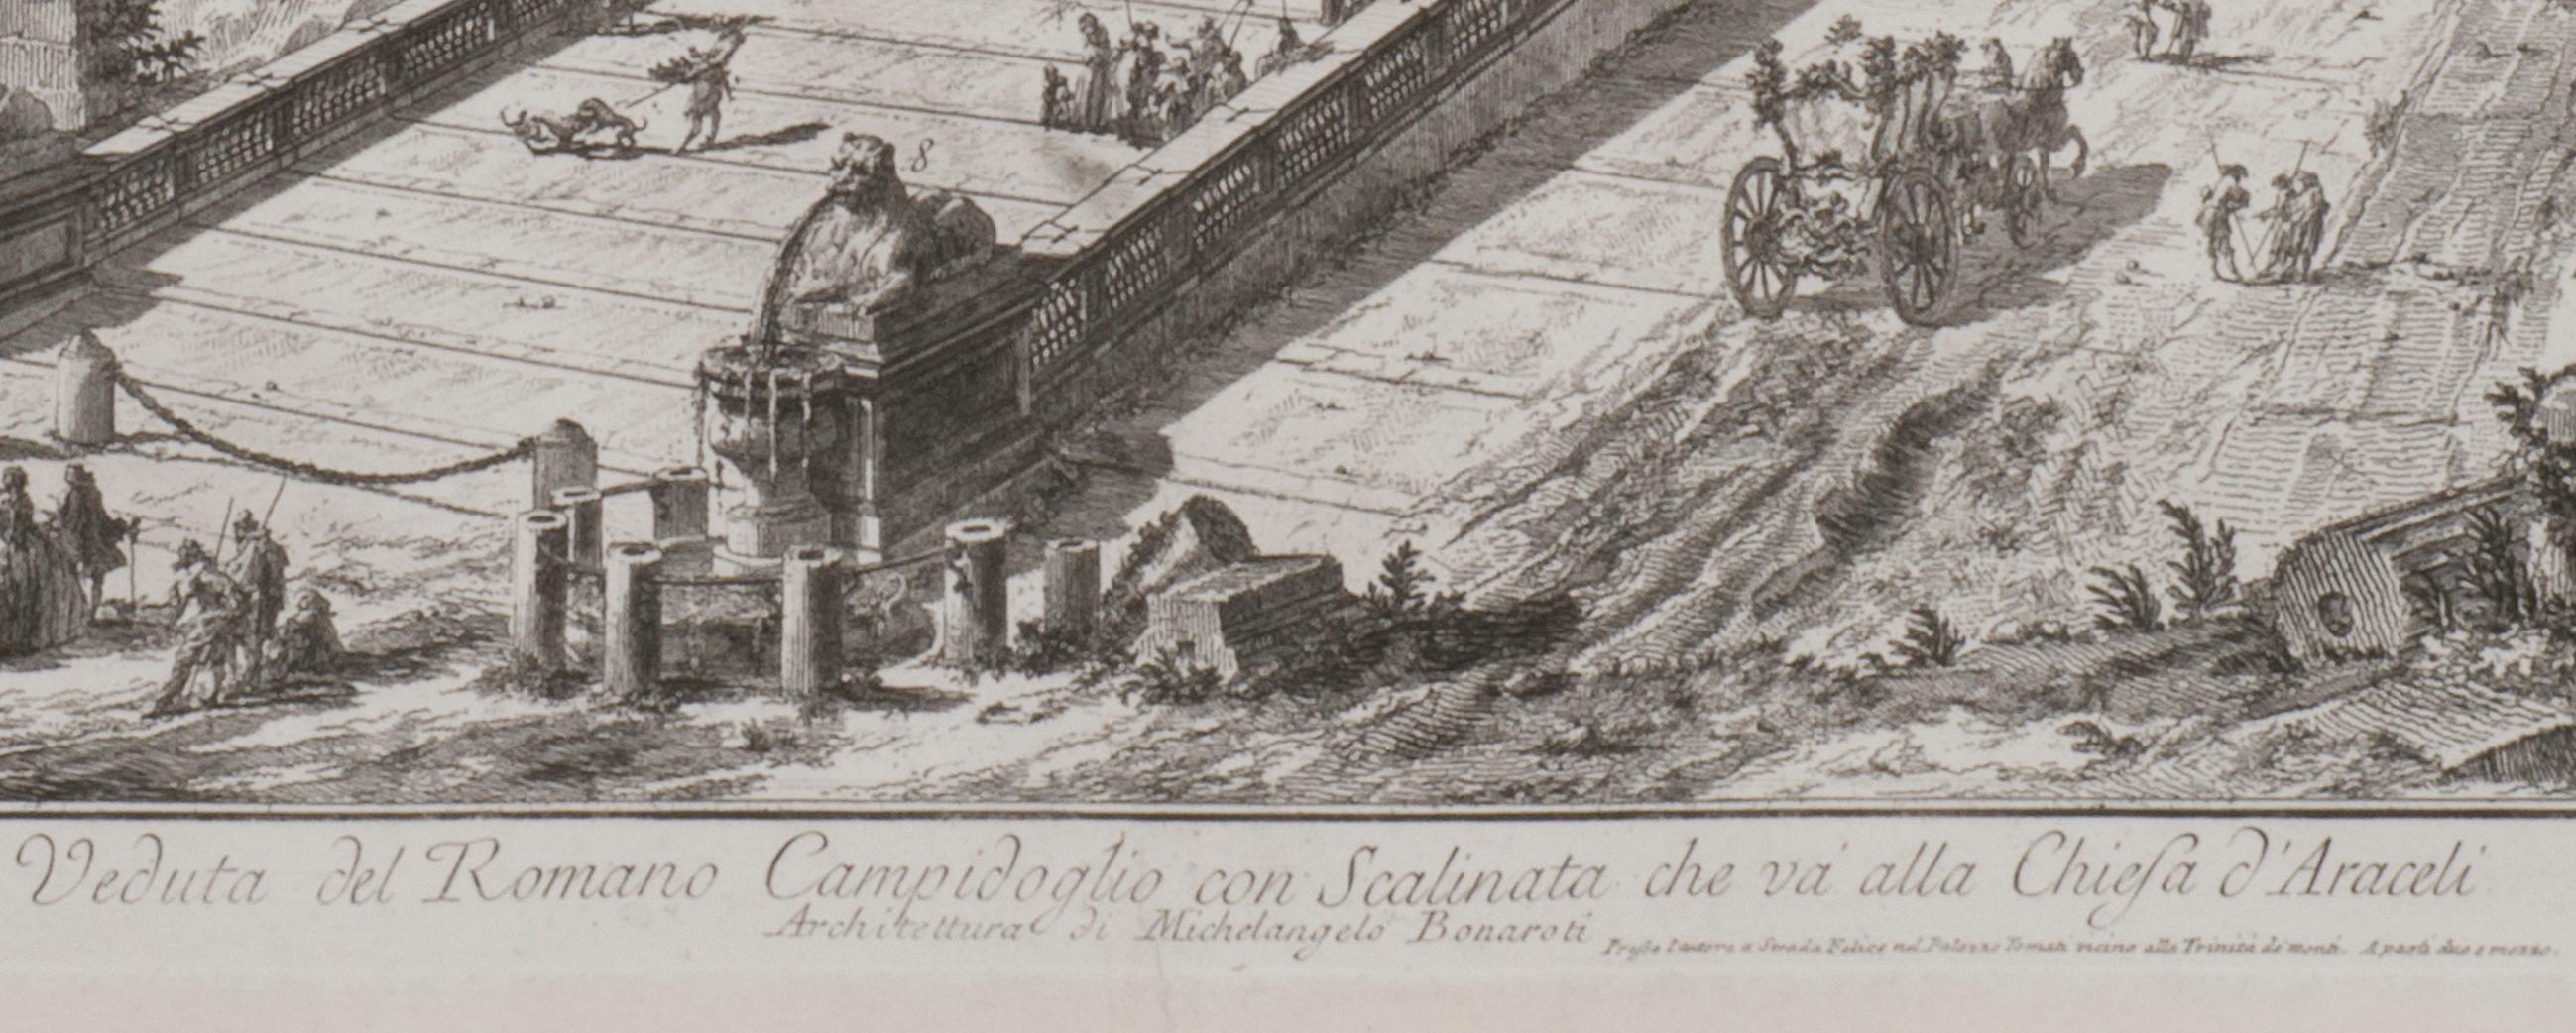 Veduta del Romano Camipidpglio con scalinata che va alla chisea d'Araceli (The C im Angebot 1